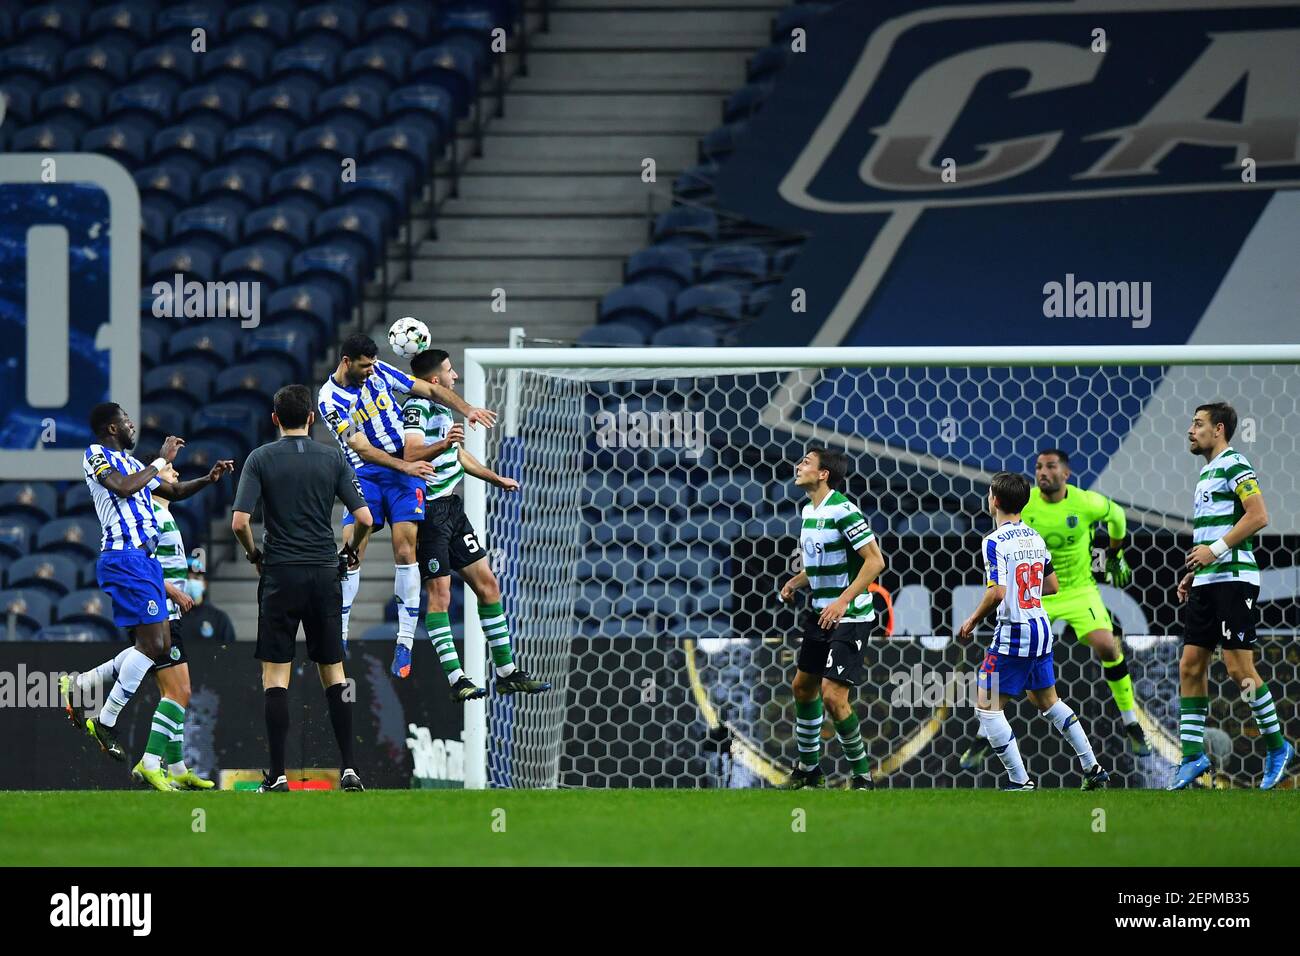 Mehdi Taremi do Porto disputa o lance com Gon&#XE7;alo Inácio do Sporting durante a partida entre Porto e Sporting, pela 21&#xaa; rodada do Campeonato tib#xea;s 2020/2021, no Estádio do Drag&#XE3;o neste sábado 27. Stockfoto